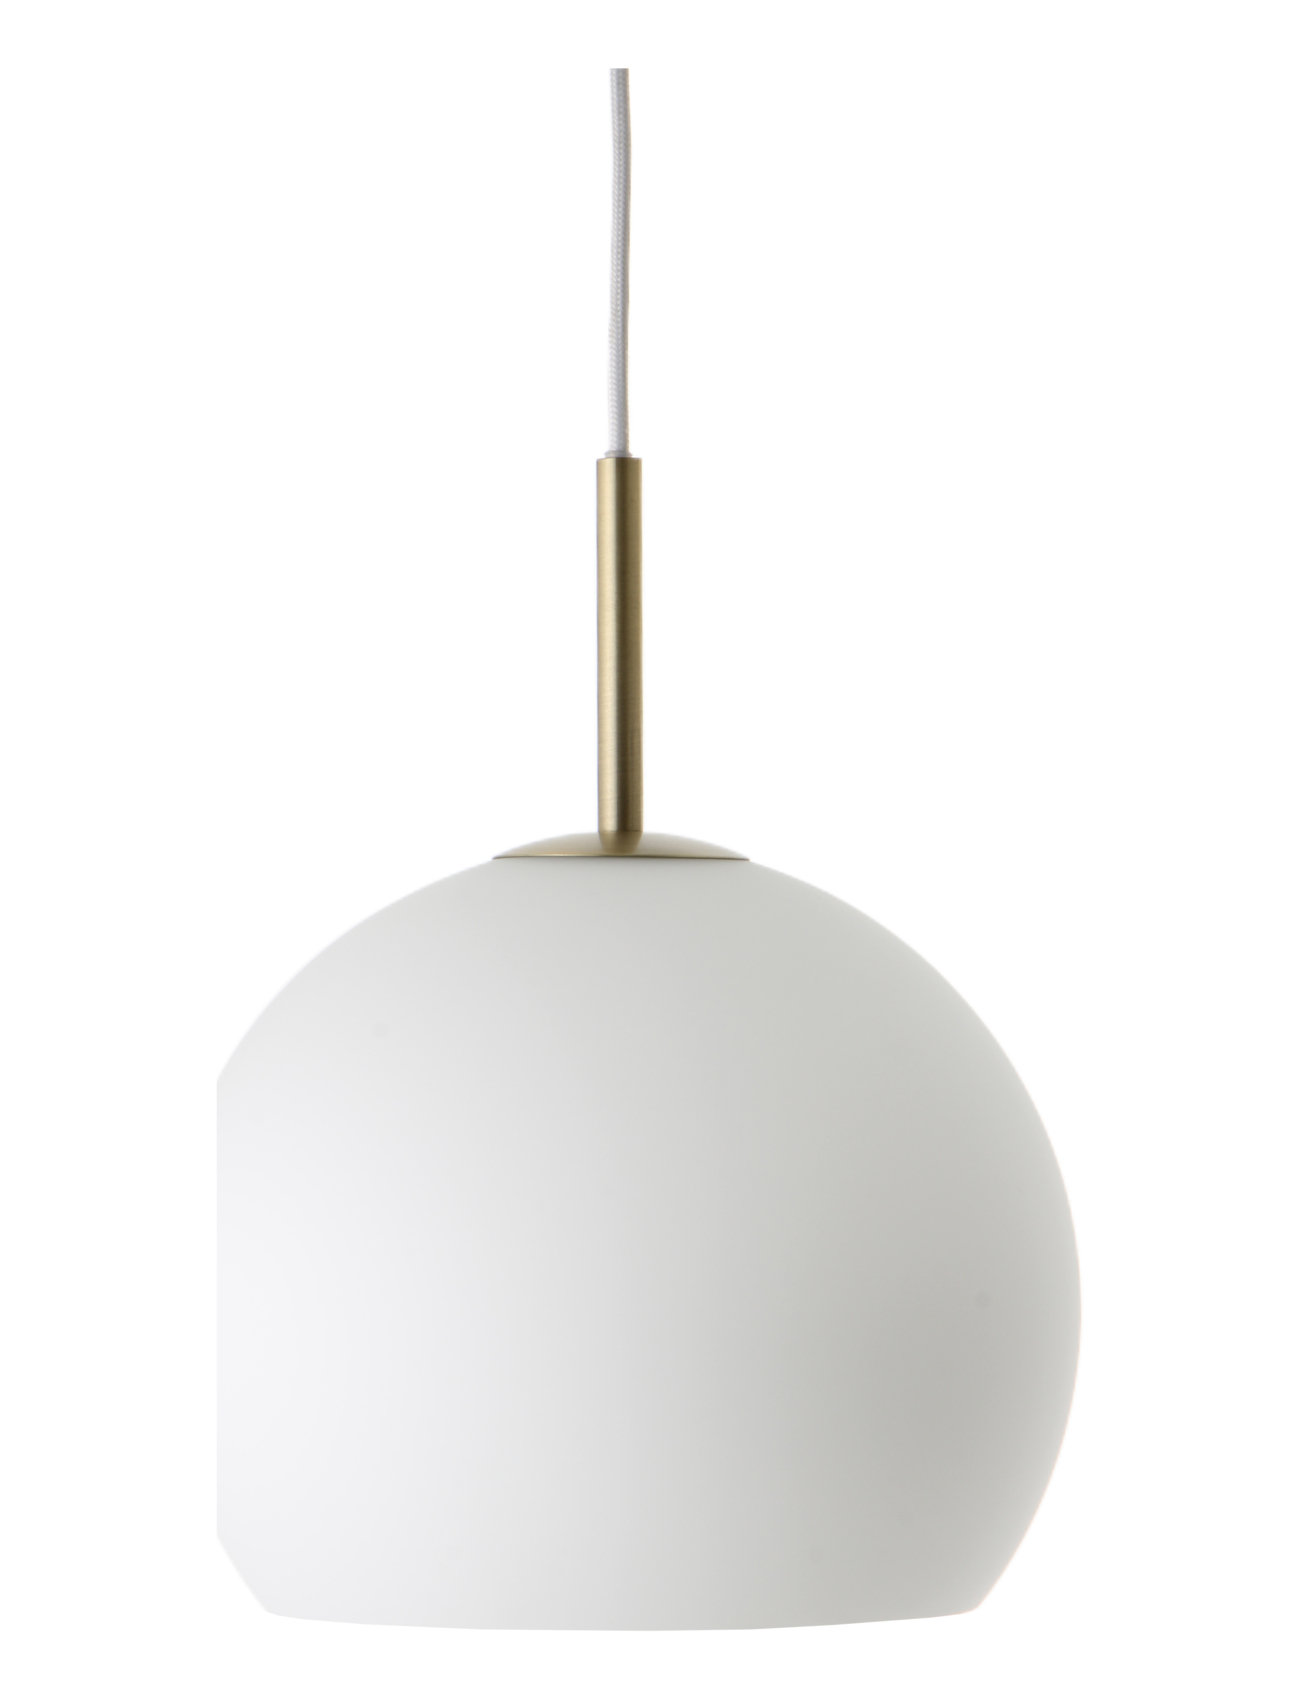 Ball Home Lighting Lamps Ceiling Lamps Pendant Lamps White Frandsen Lighting